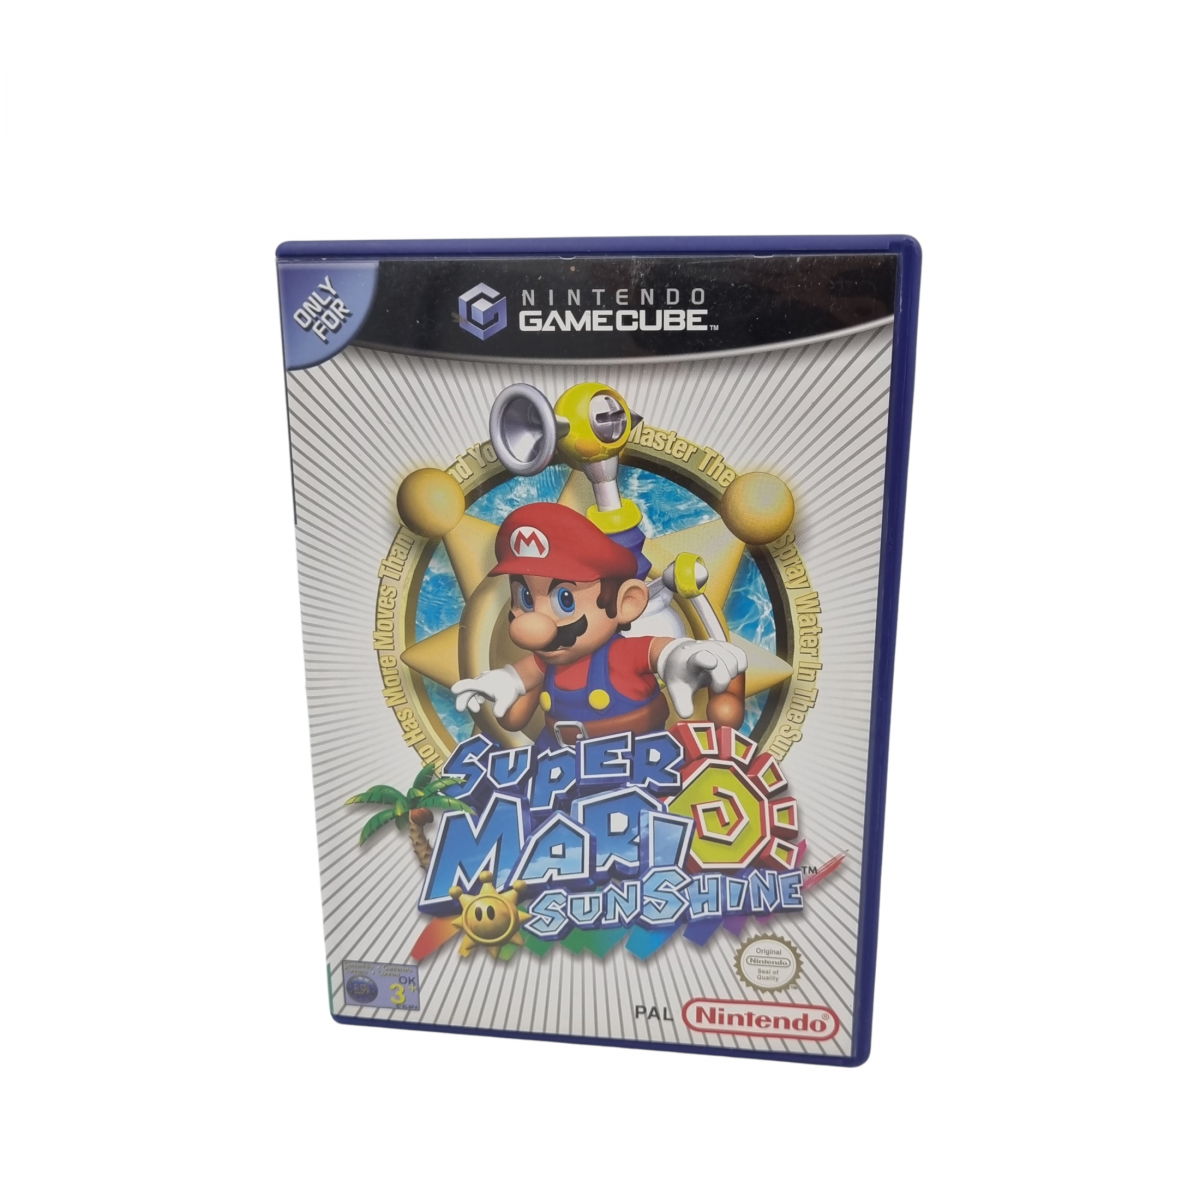 Super Mario Sunshine GameCube - front